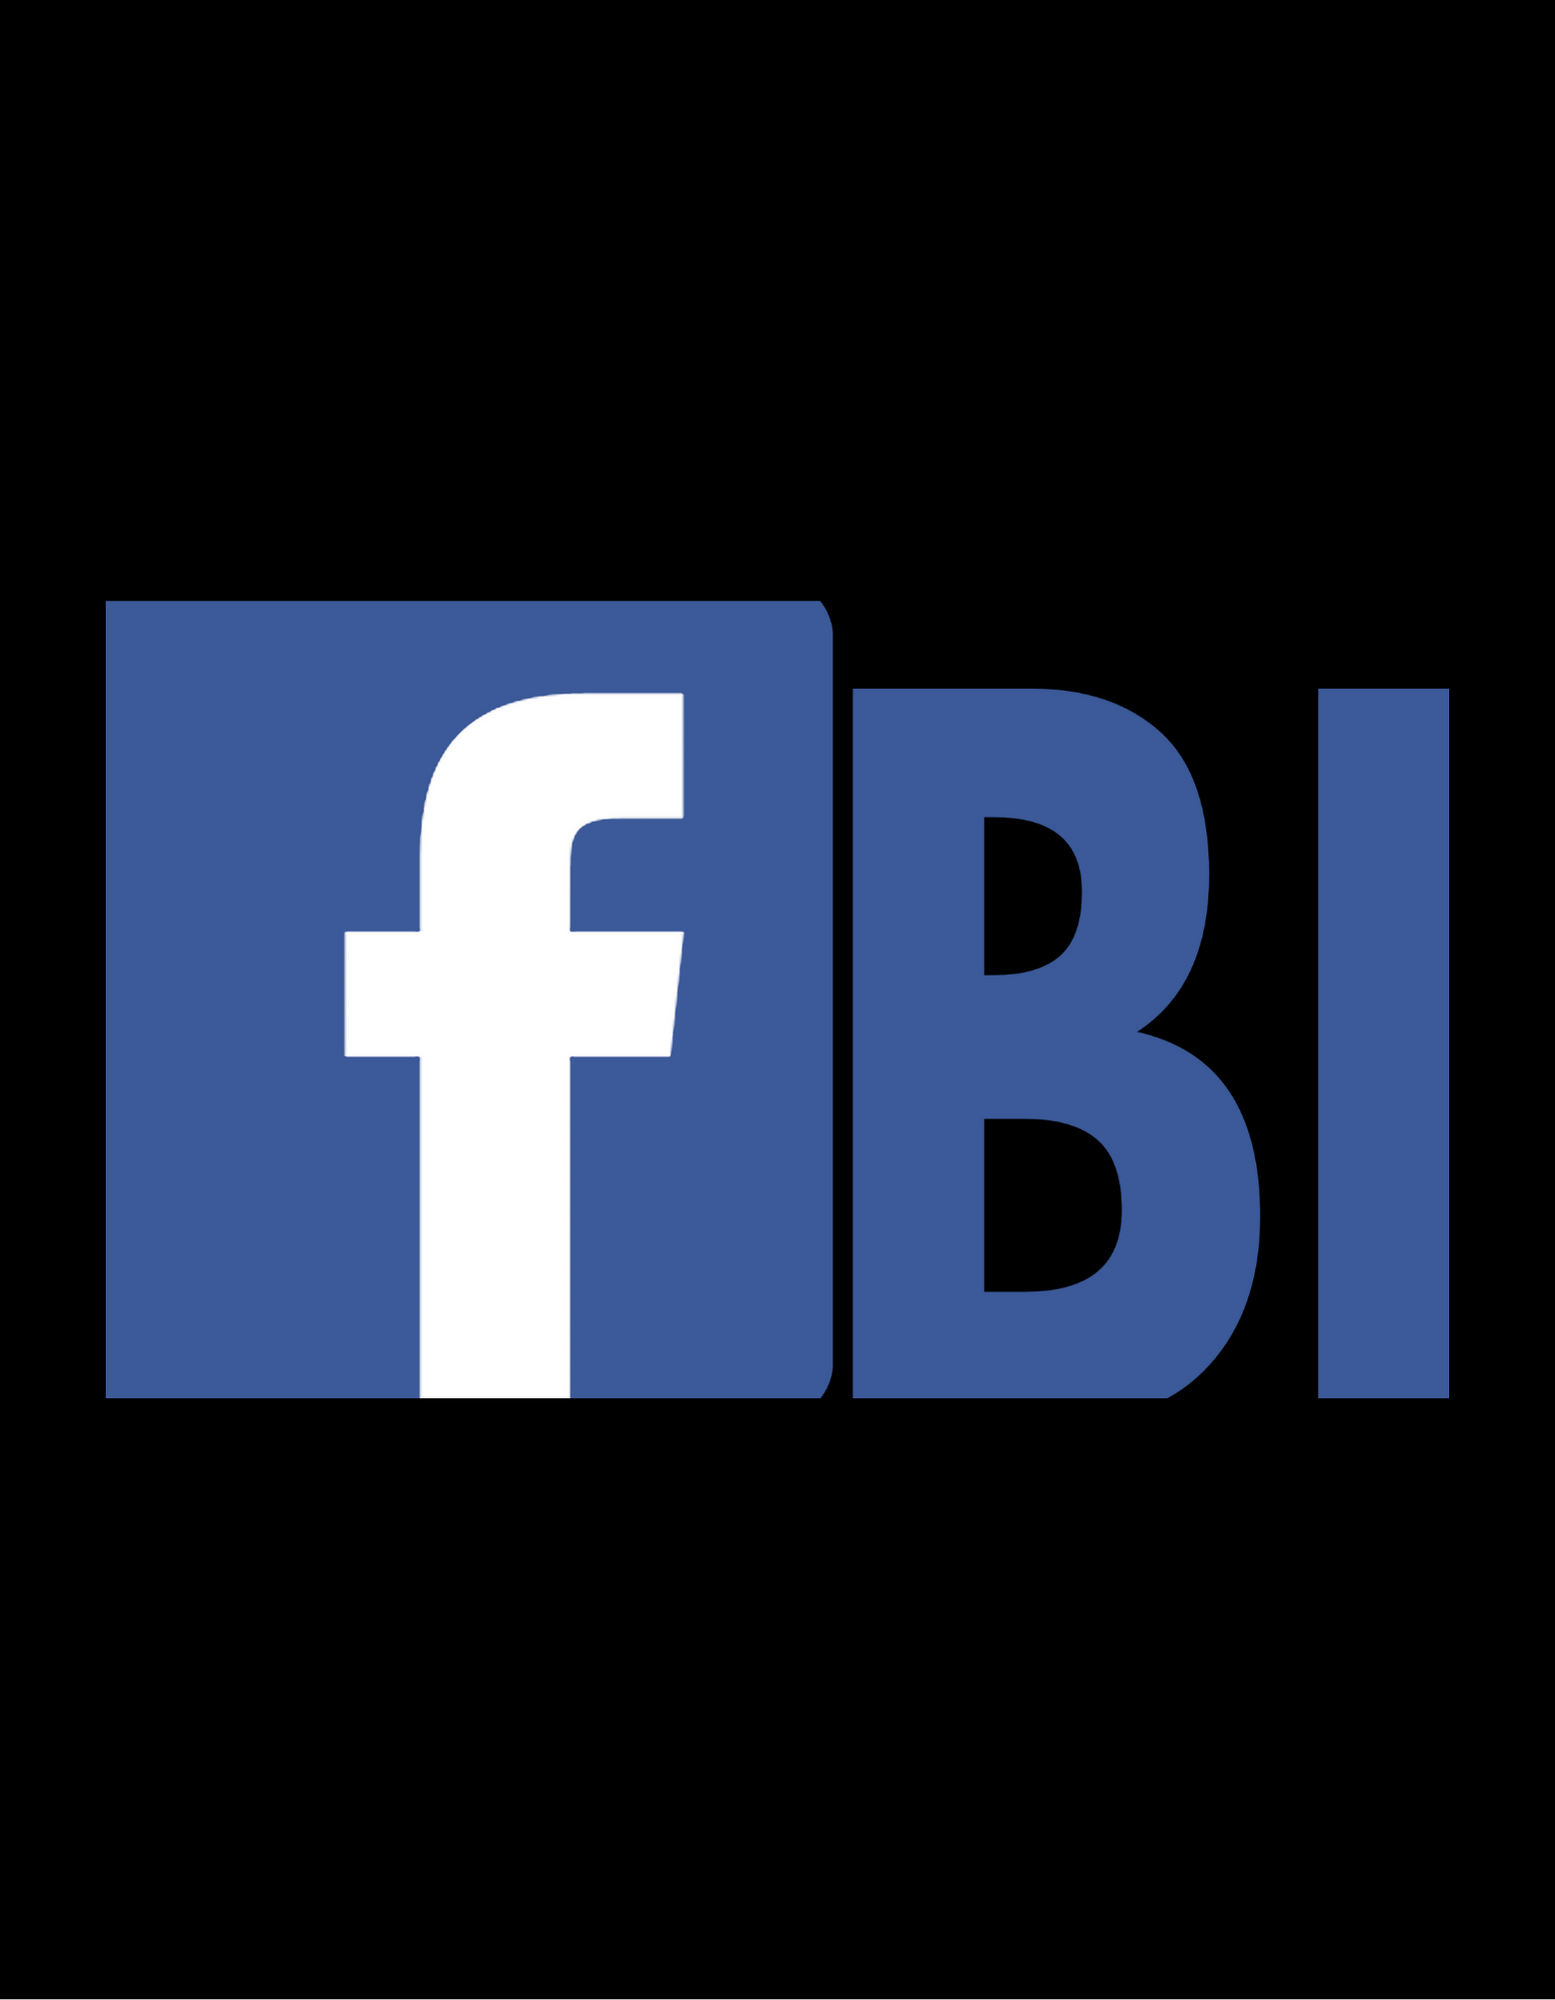 FB/FBI Sticker